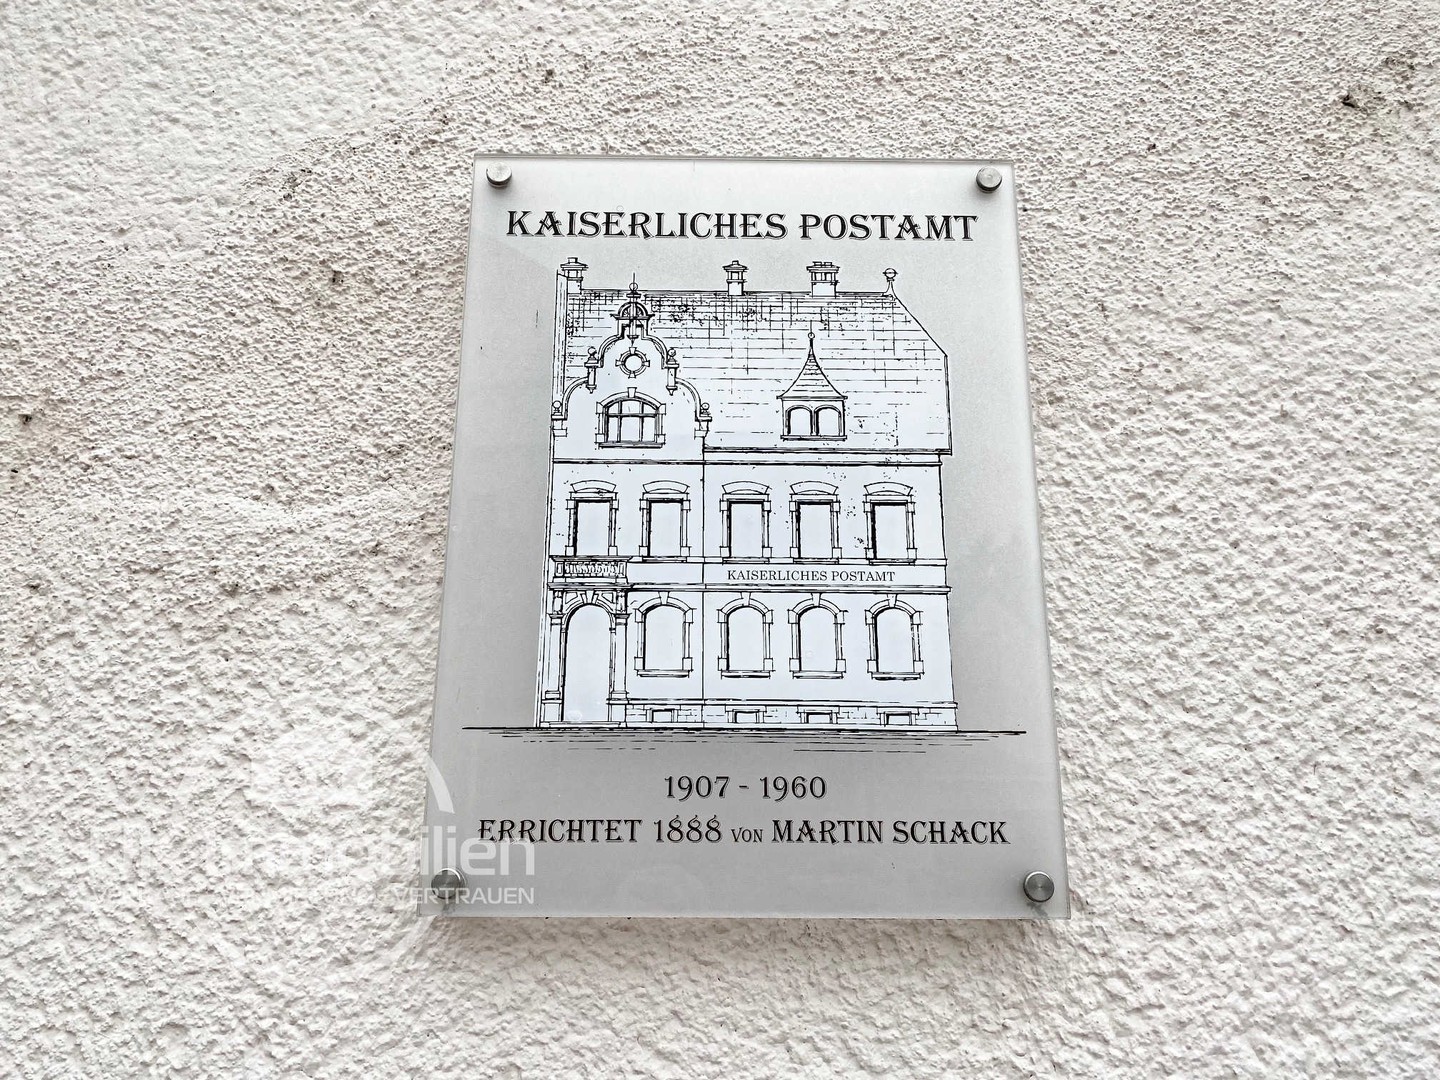 immobilienmakler-frankfurt-fechenheim-kaiserliches-postamt-lappengasse.jpg